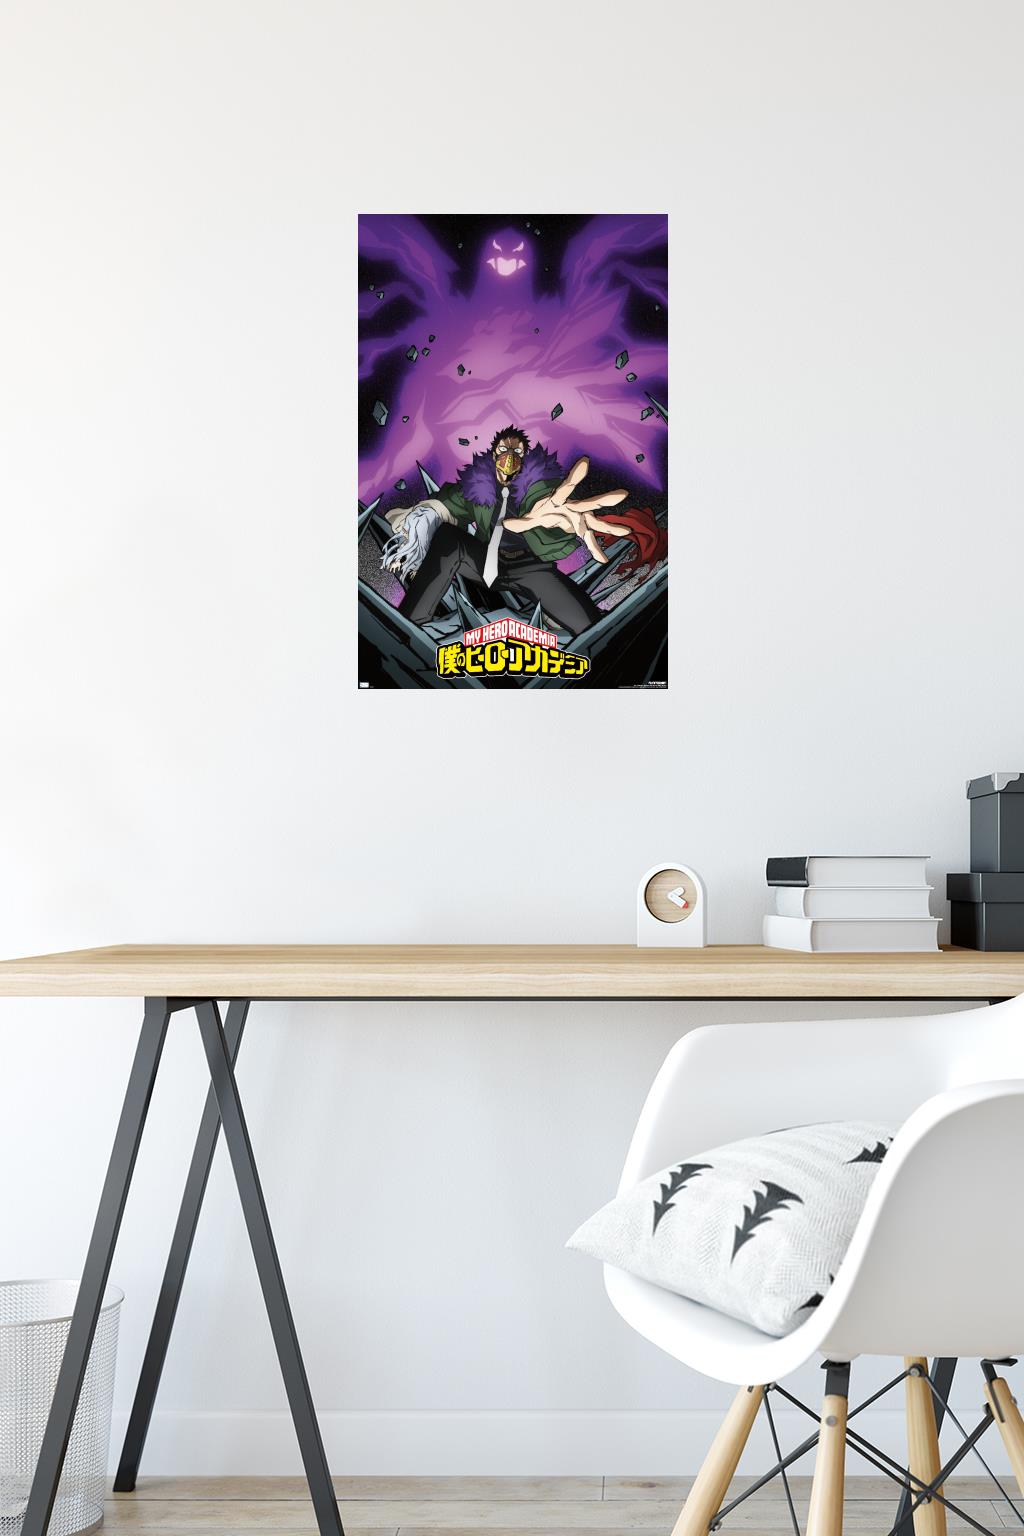 My Hero Academia: Season 4 - Key Art Wall Poster, 14.725 x 22.375, Framed